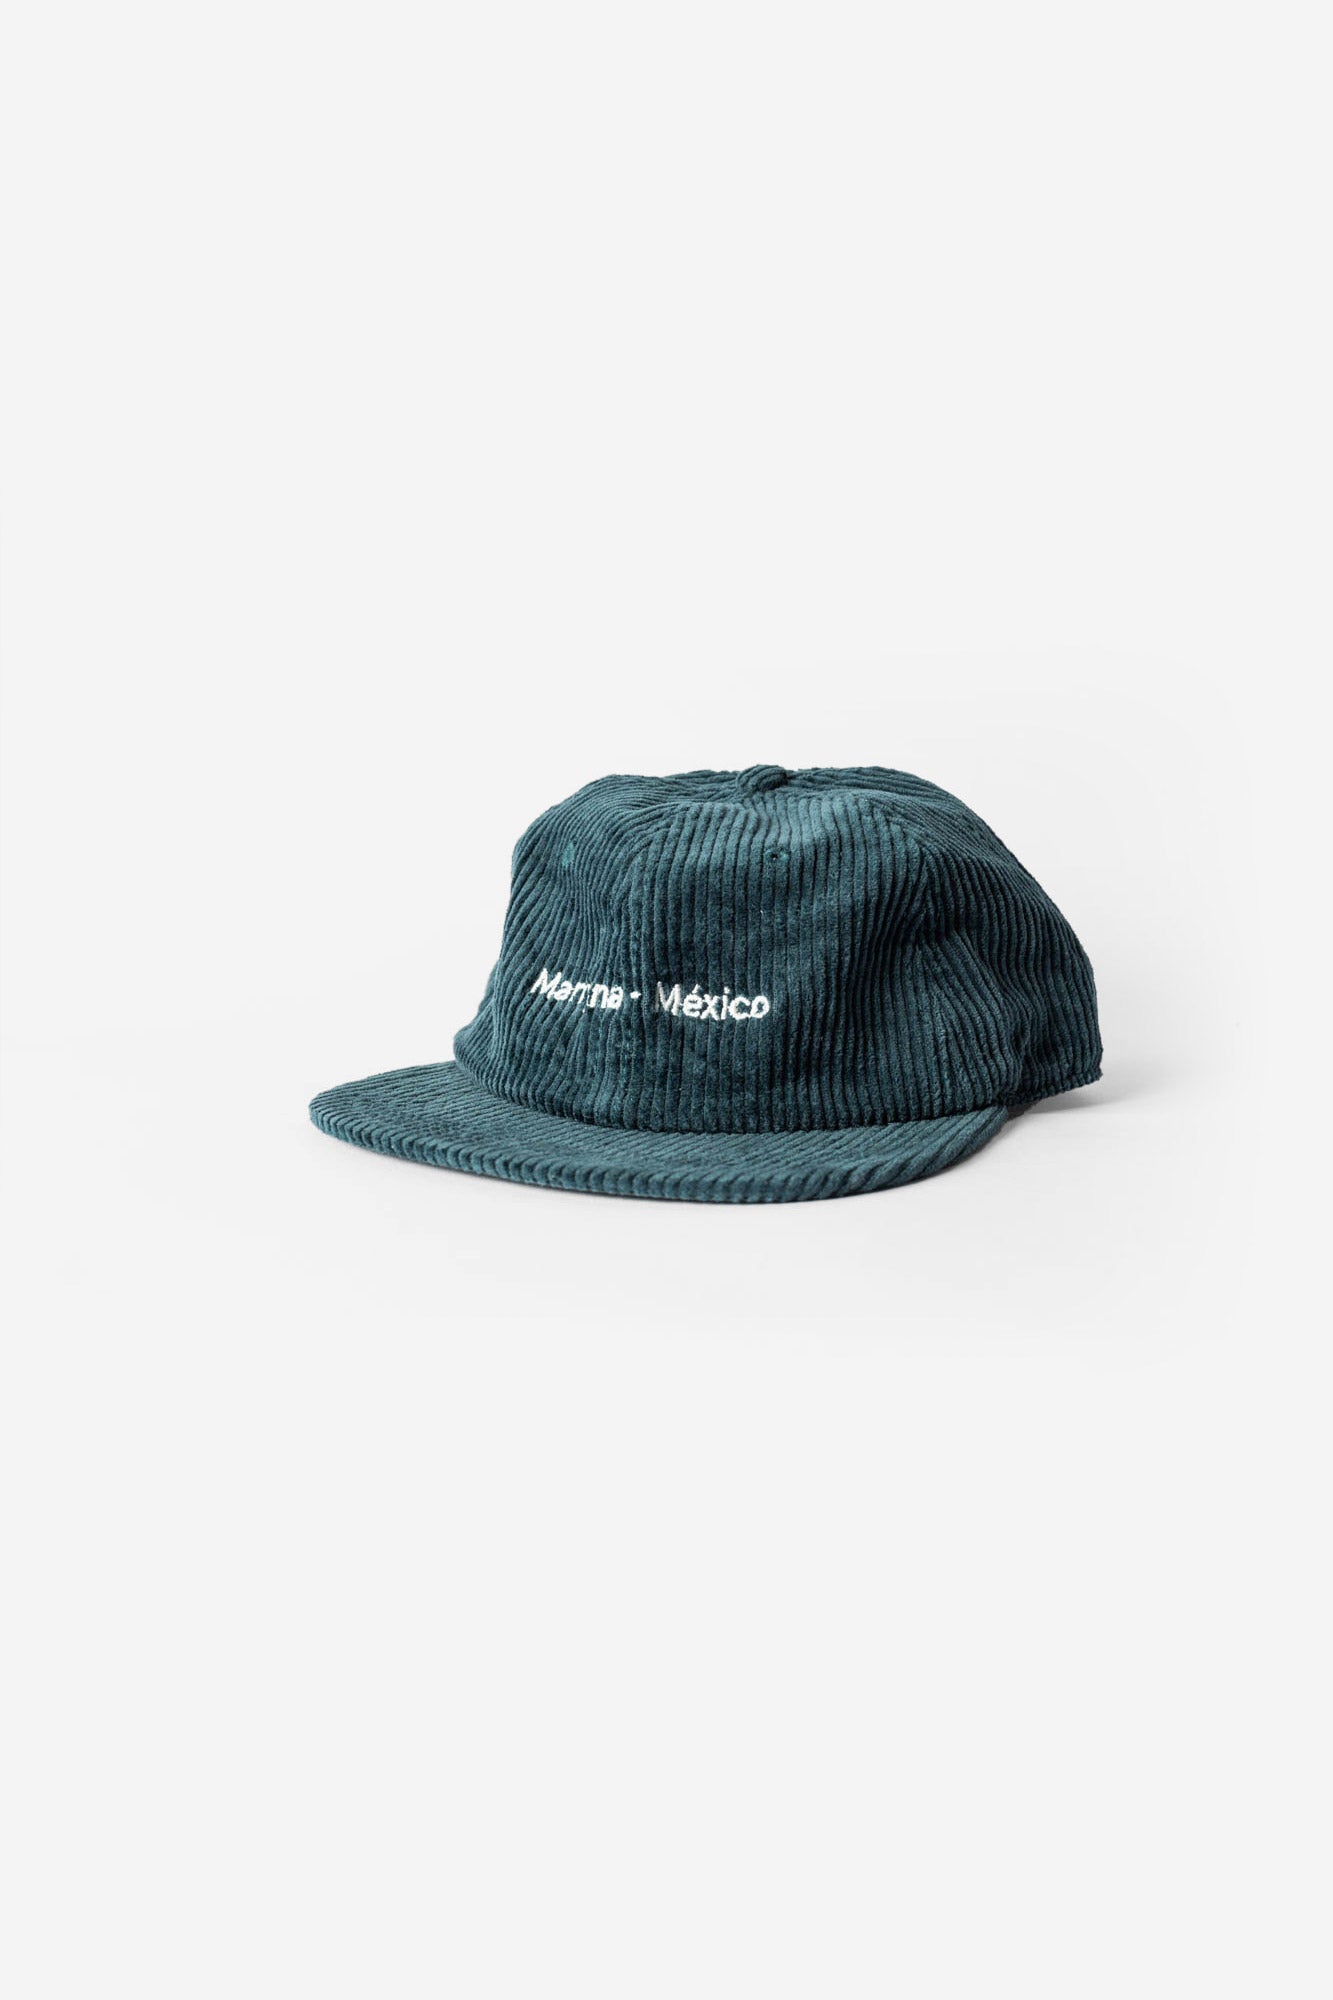 Manyana - Mexico Hat